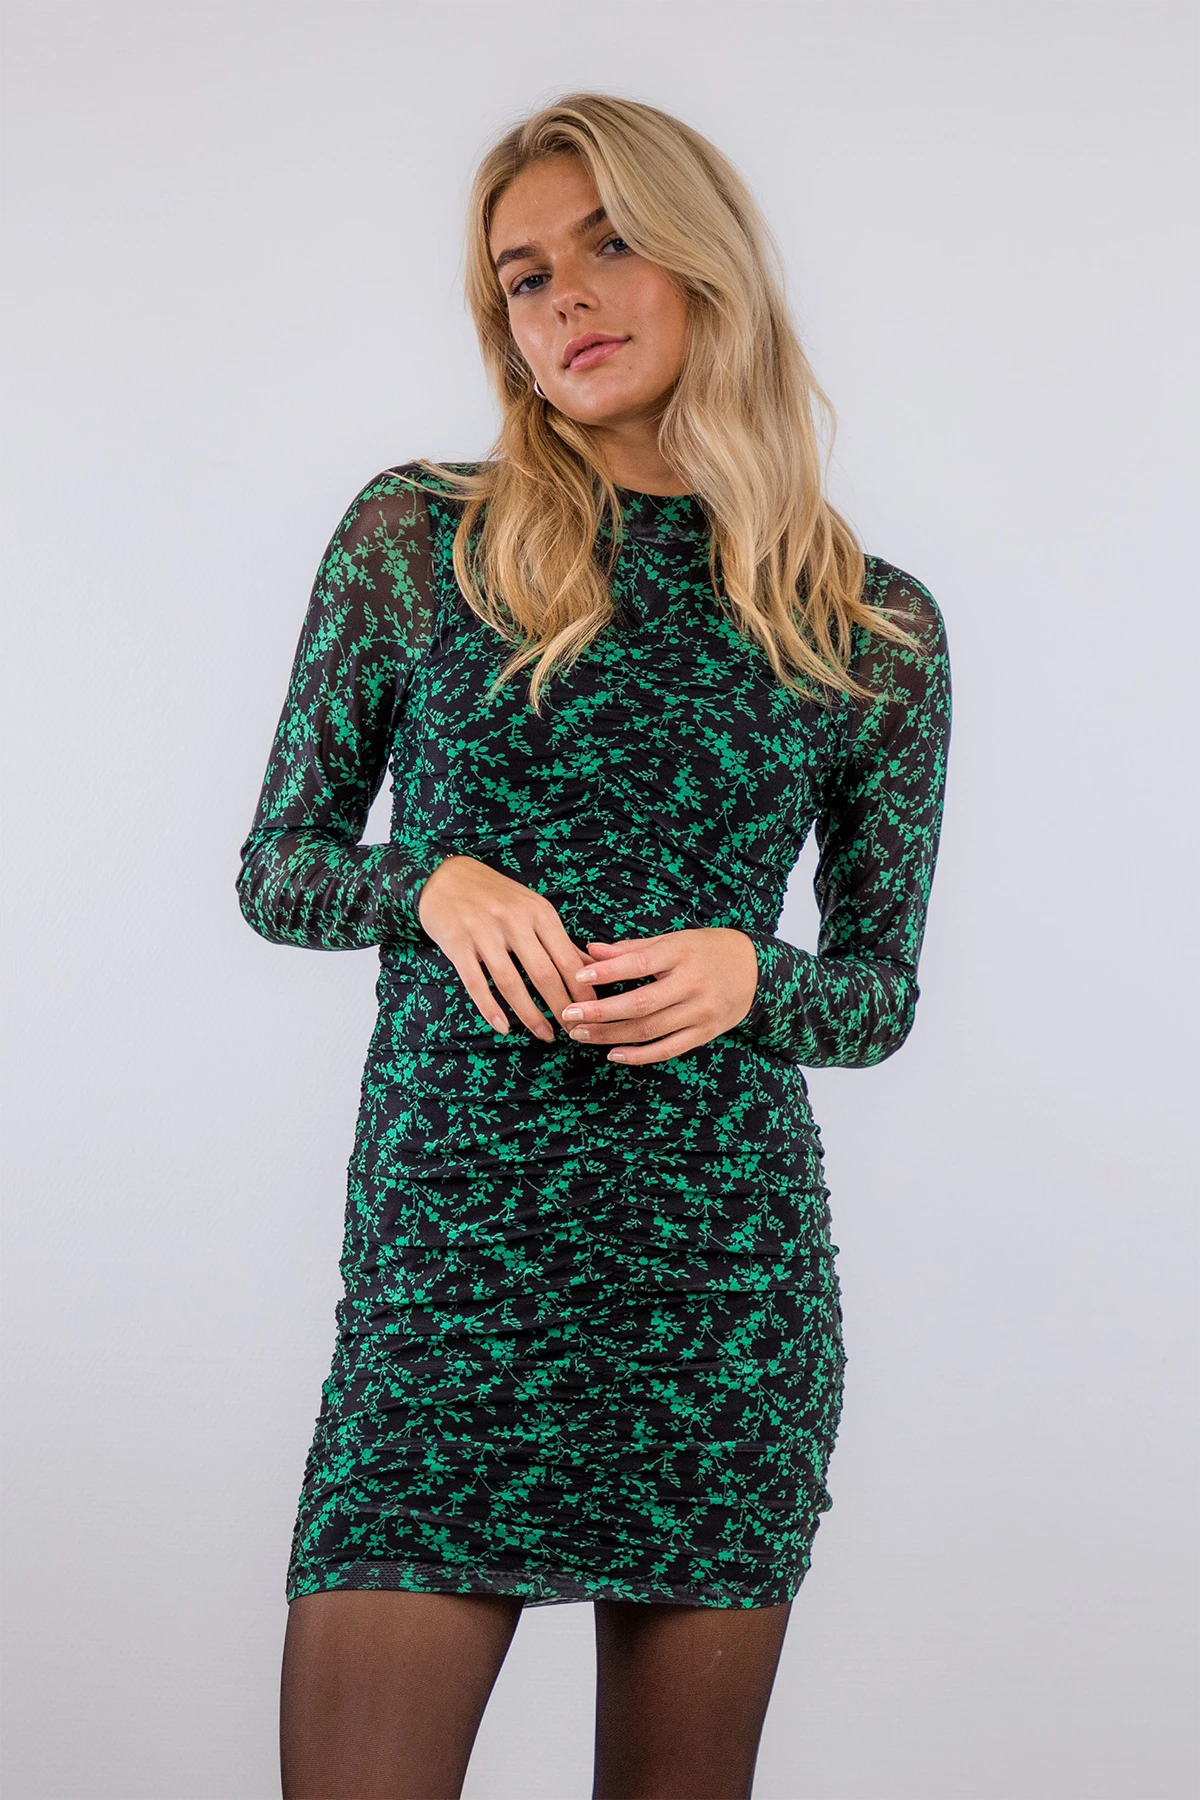 præmie Diktere tømrer Neo Noir dresses 2020 - Big selection - Click here to buy